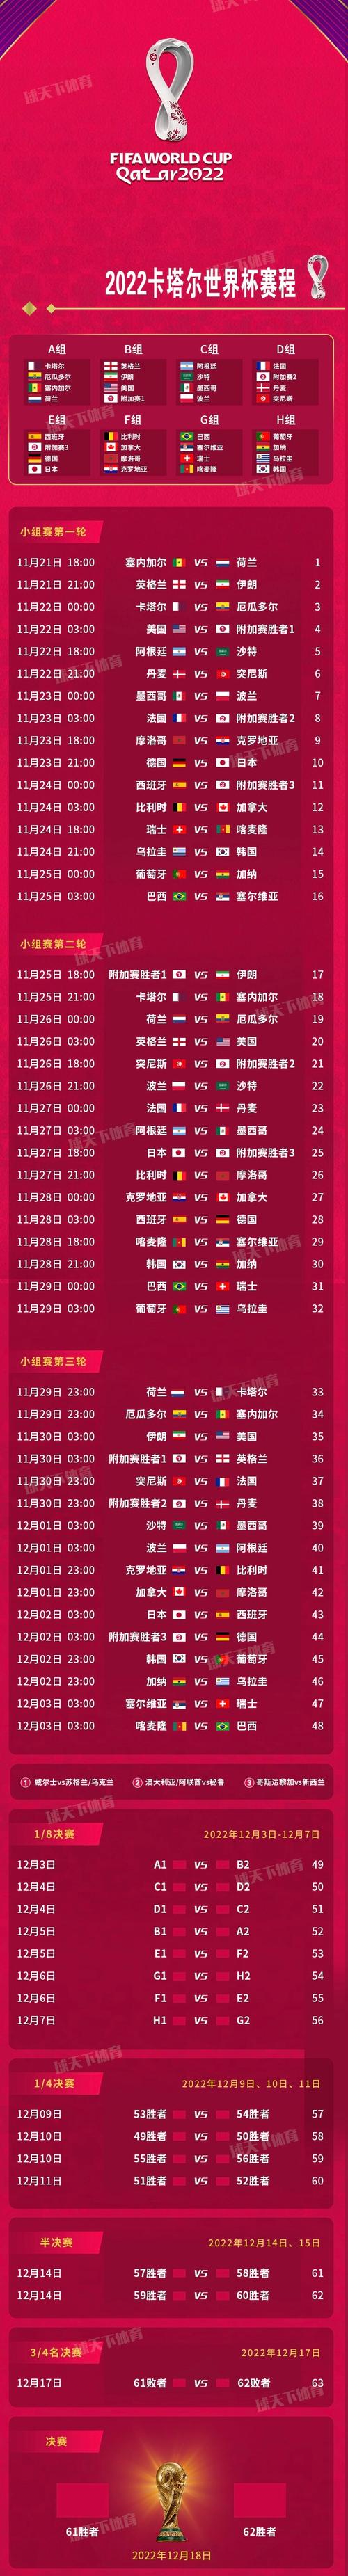 世界杯亚洲区预选赛中国比赛时间